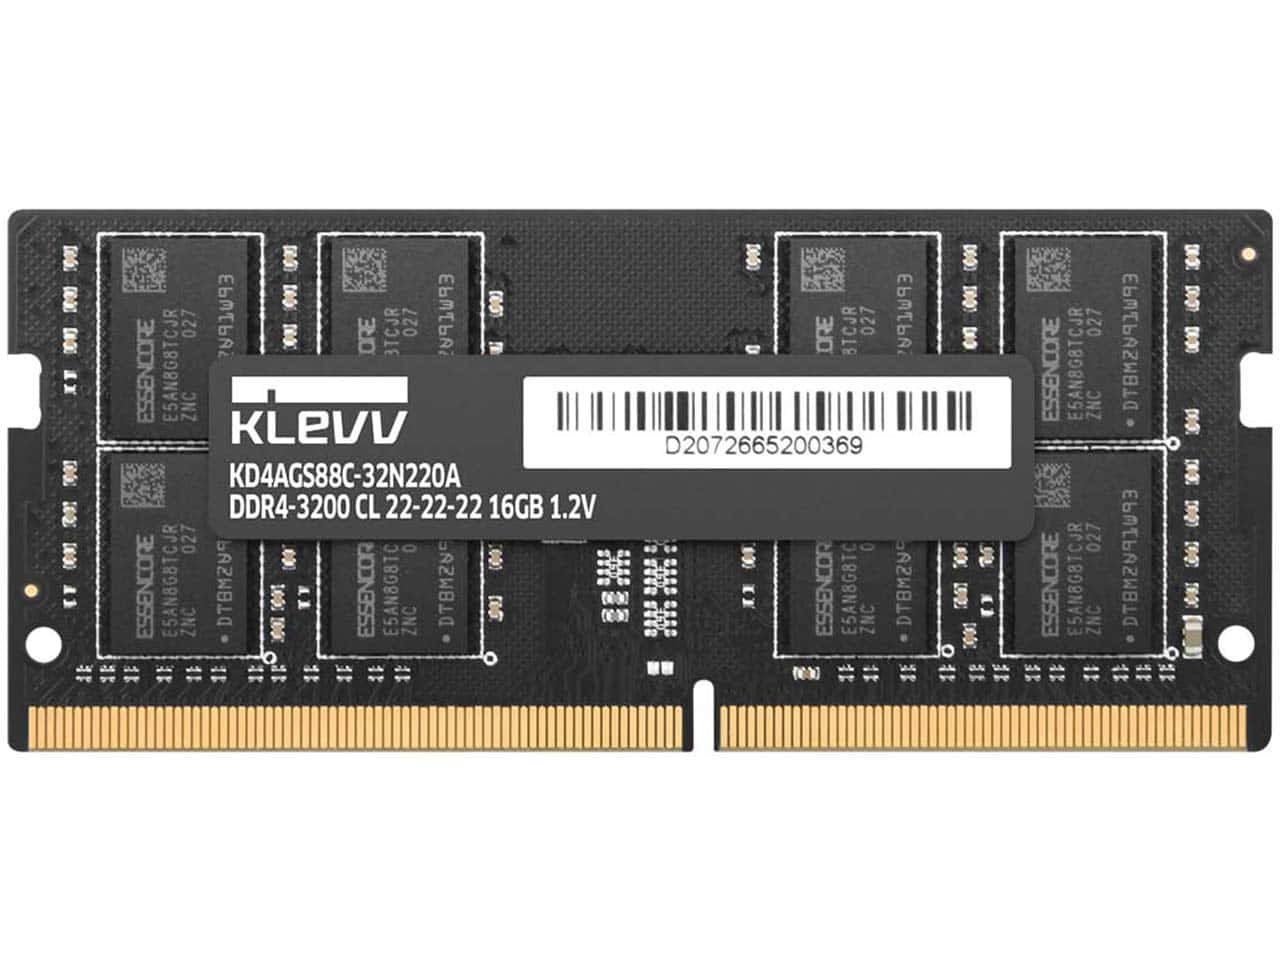 نقد و بررسی رم لپ تاپ DDR4 کلو 3200MHz مدل KLEVV KD4BGSA8C-32N220A ظرفیت 32 گیگابایت با گارانتی m.i.t group